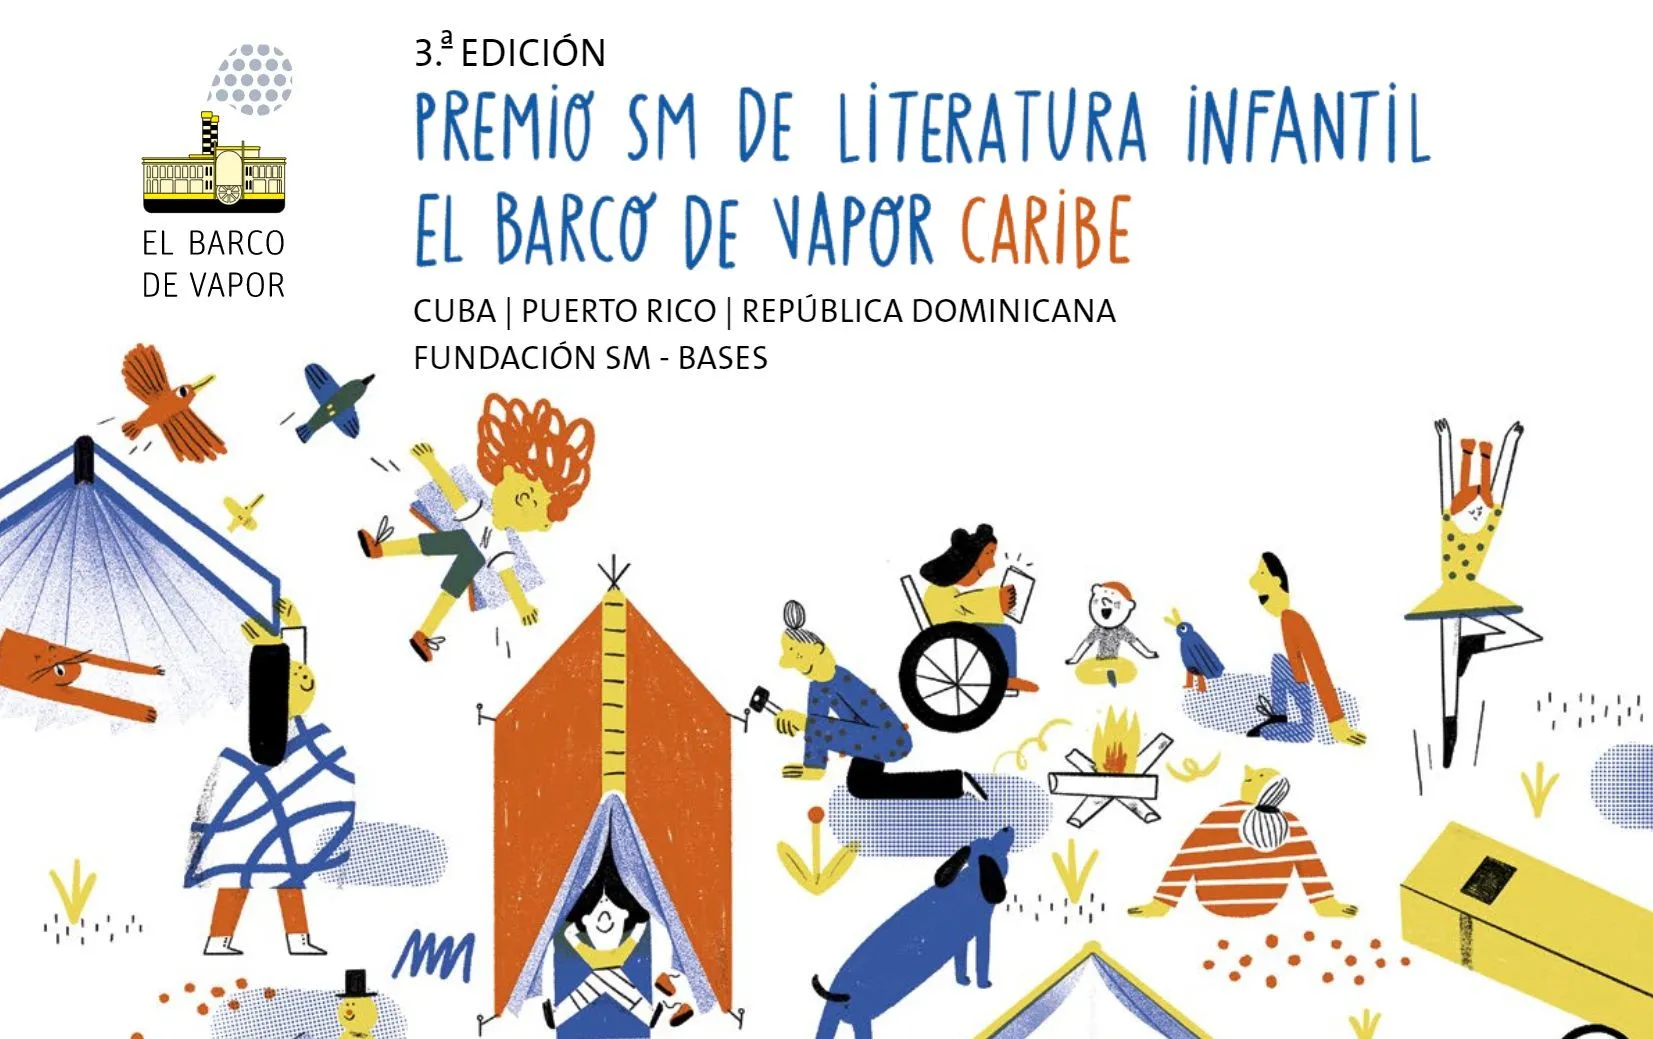 Escritores dominicanos, puertorriqueños y cubanos, convocados concurso de literatura infantil